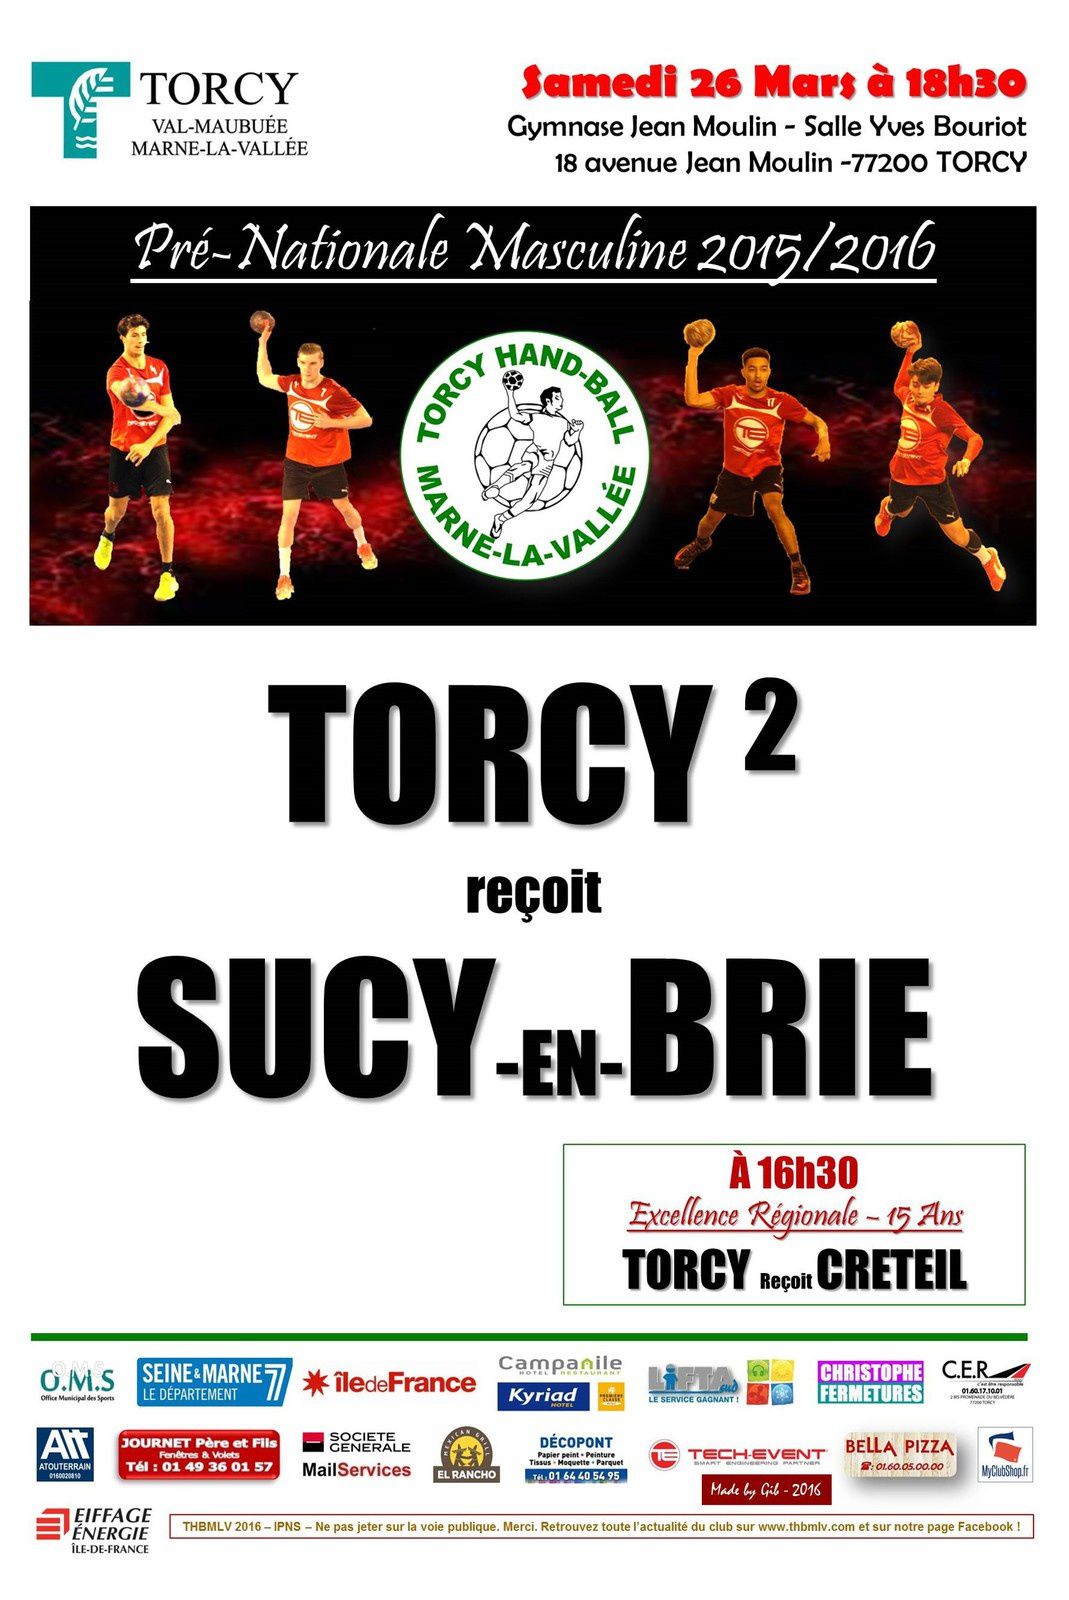 THBMLV 2 vs SUCY-EN-BRIE (Pré-Nationale) 26.03.2016